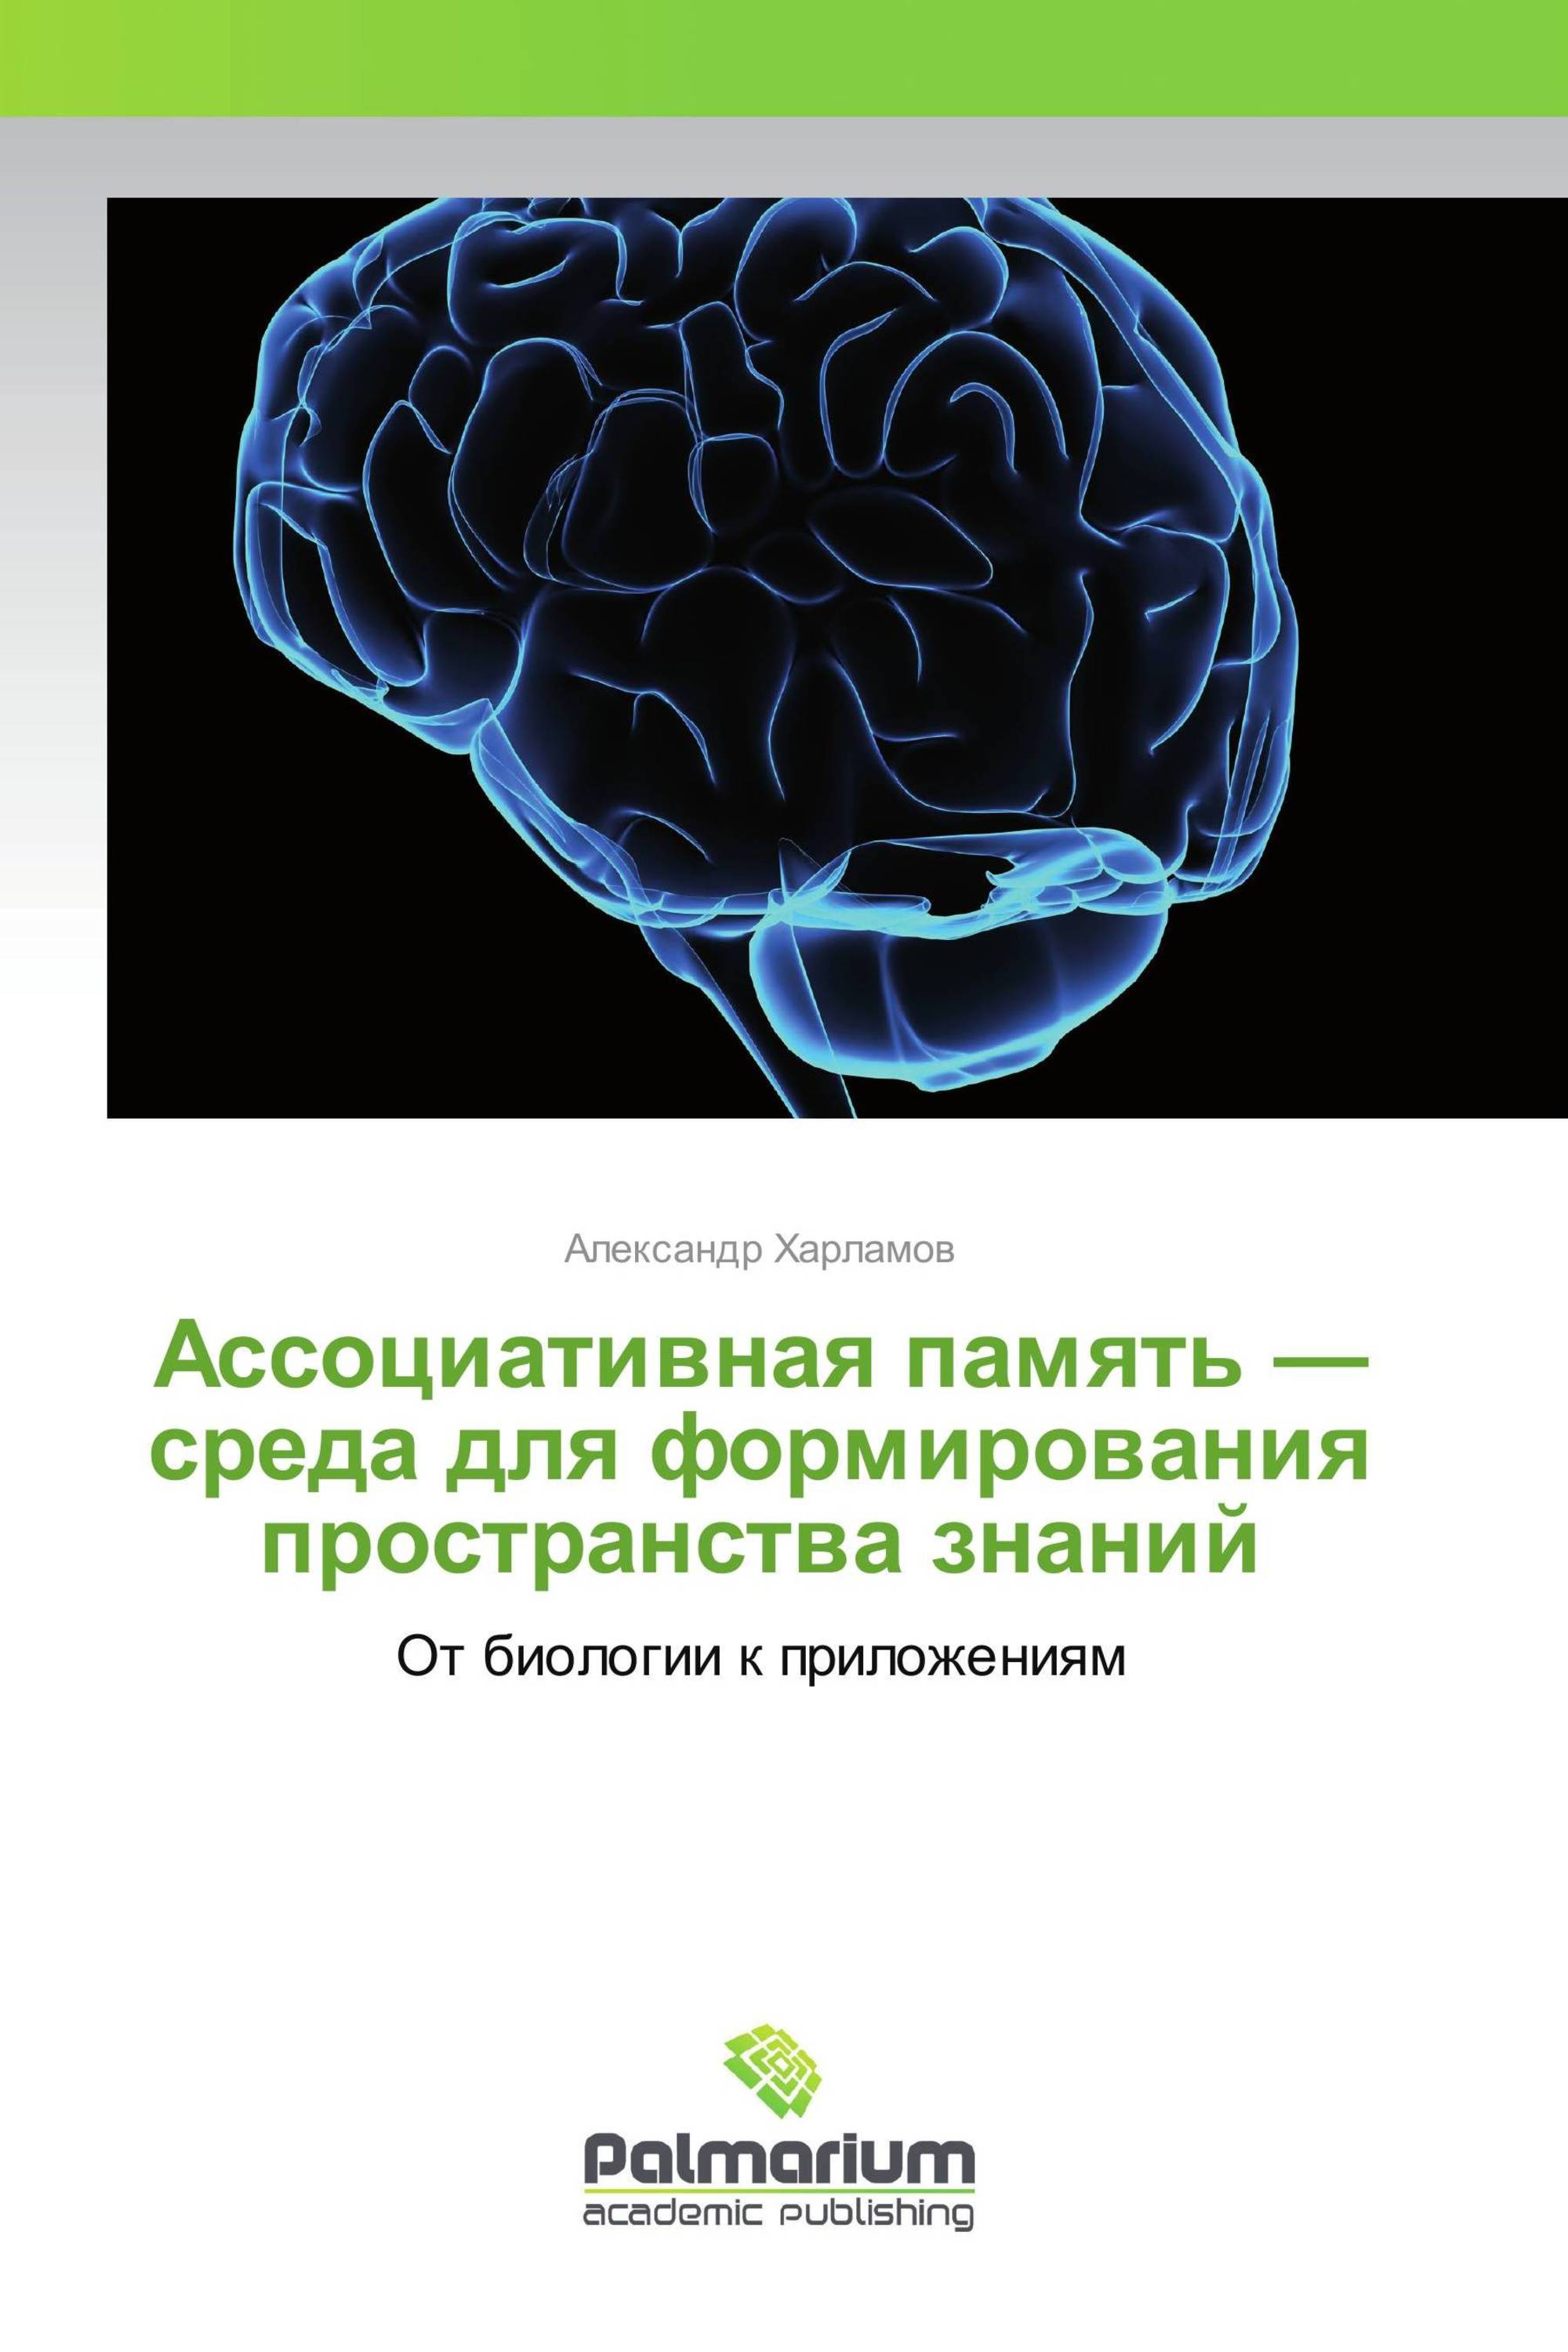 Ассоциативная книга. Нейролингвистическое программирование книга. Нейролингвистическое программирование. Ассоциативная память и программирование. Ассоциативная память.